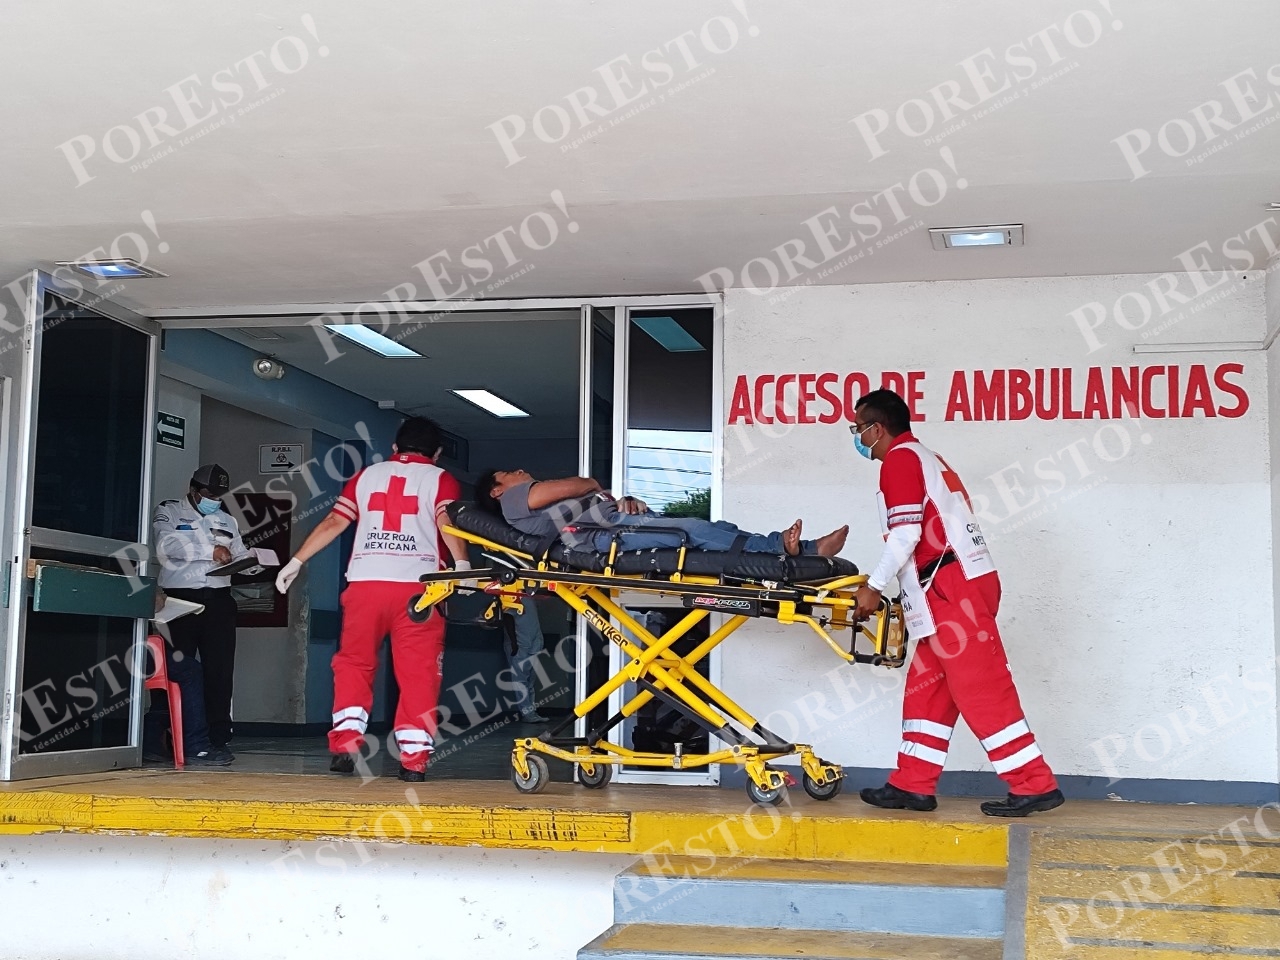 El hombre fue ingresado de emergencia al hospital San Carlos de Tizimín